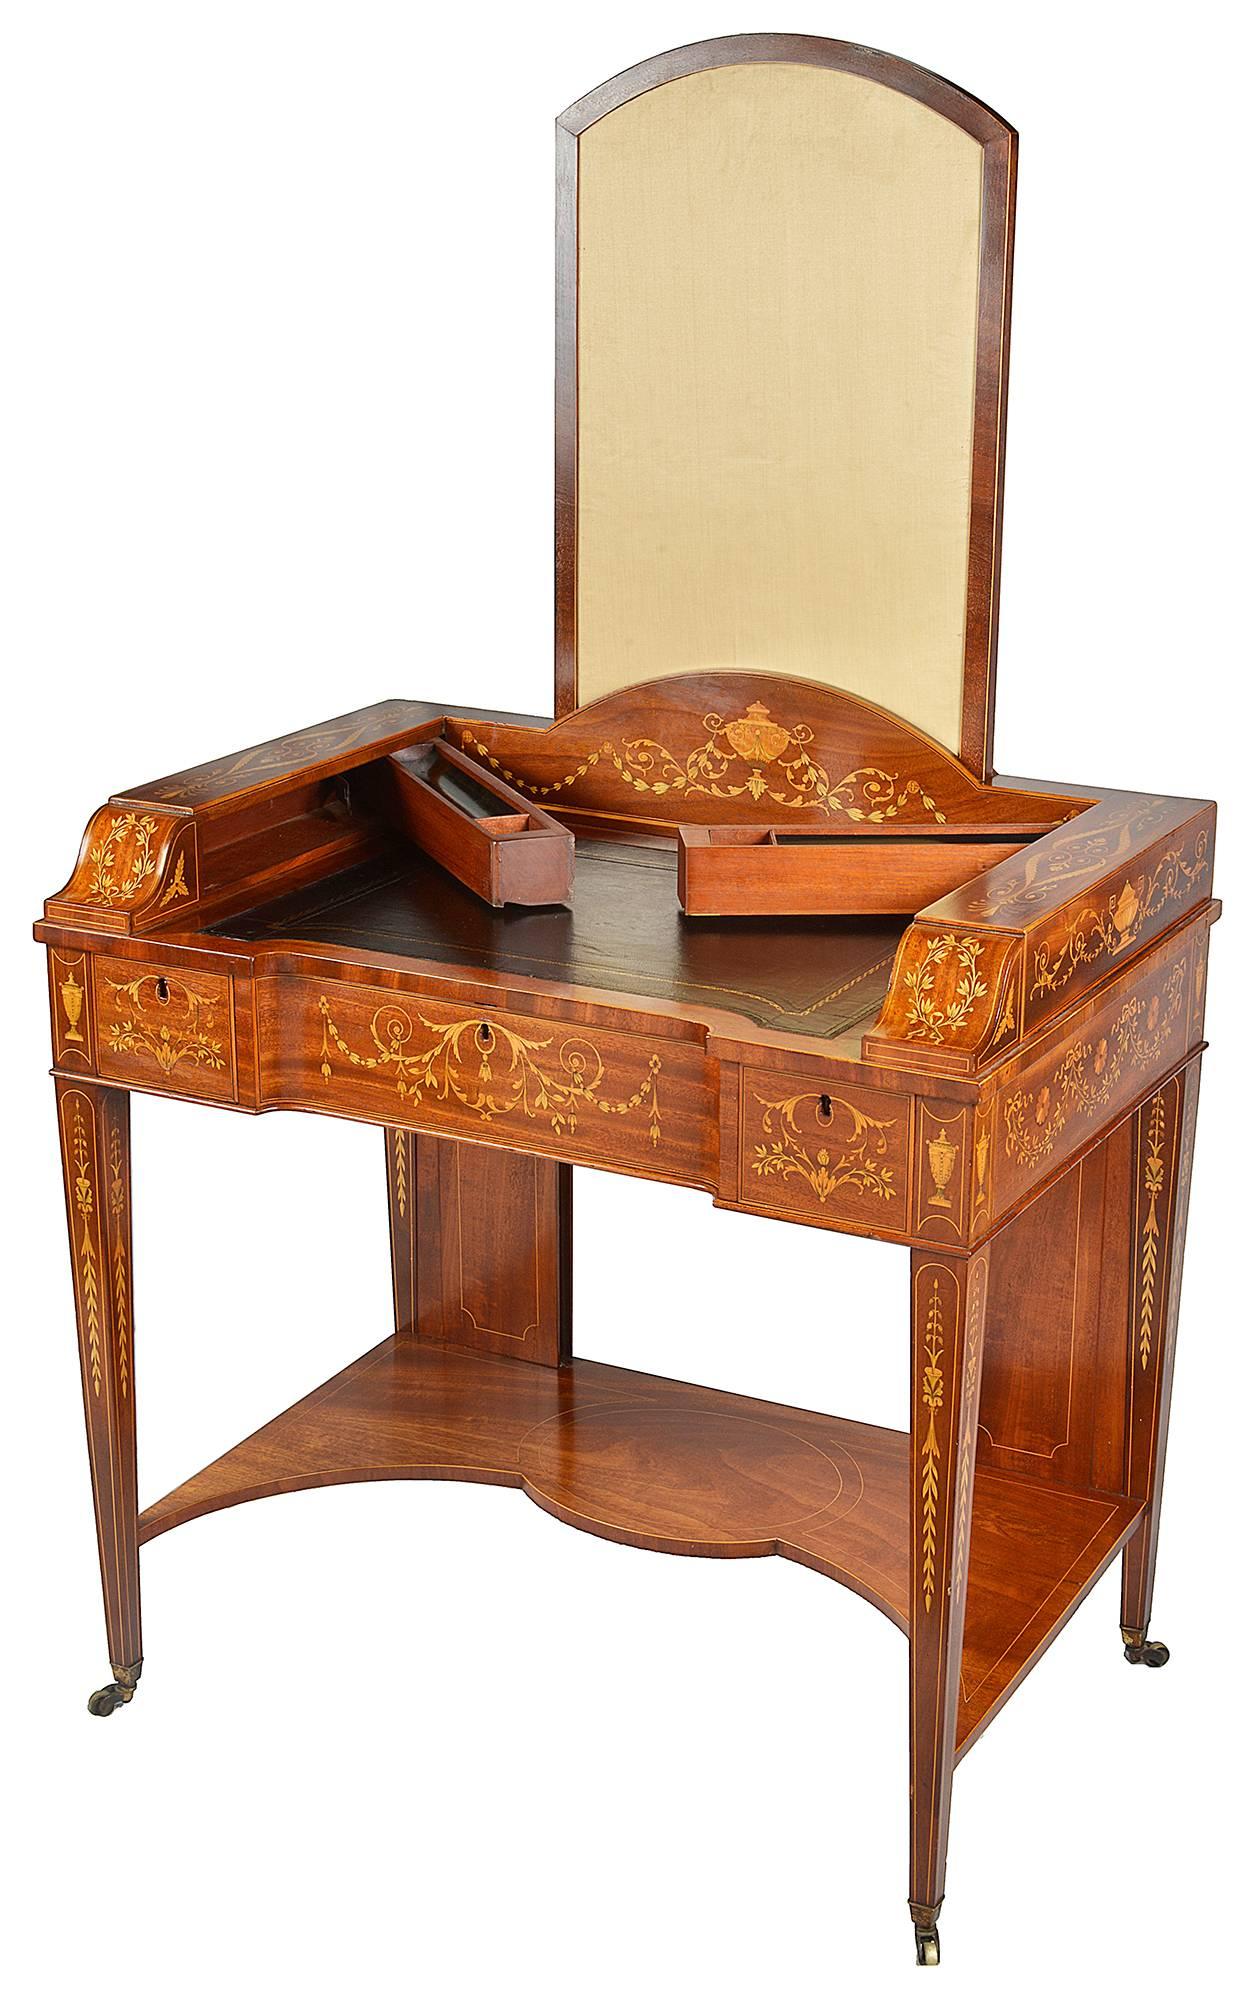 Eine sehr gute Qualität 19. Jahrhundert Edwardian Zeitraum, Sheraton Revival Schreibtisch eingelegt. Ein aufklappbarer Kaminschirm, Geheimfächer für Tinte und Stifte, die an den Seiten herausspringen. Eine eingelegte Lederplatte, drei